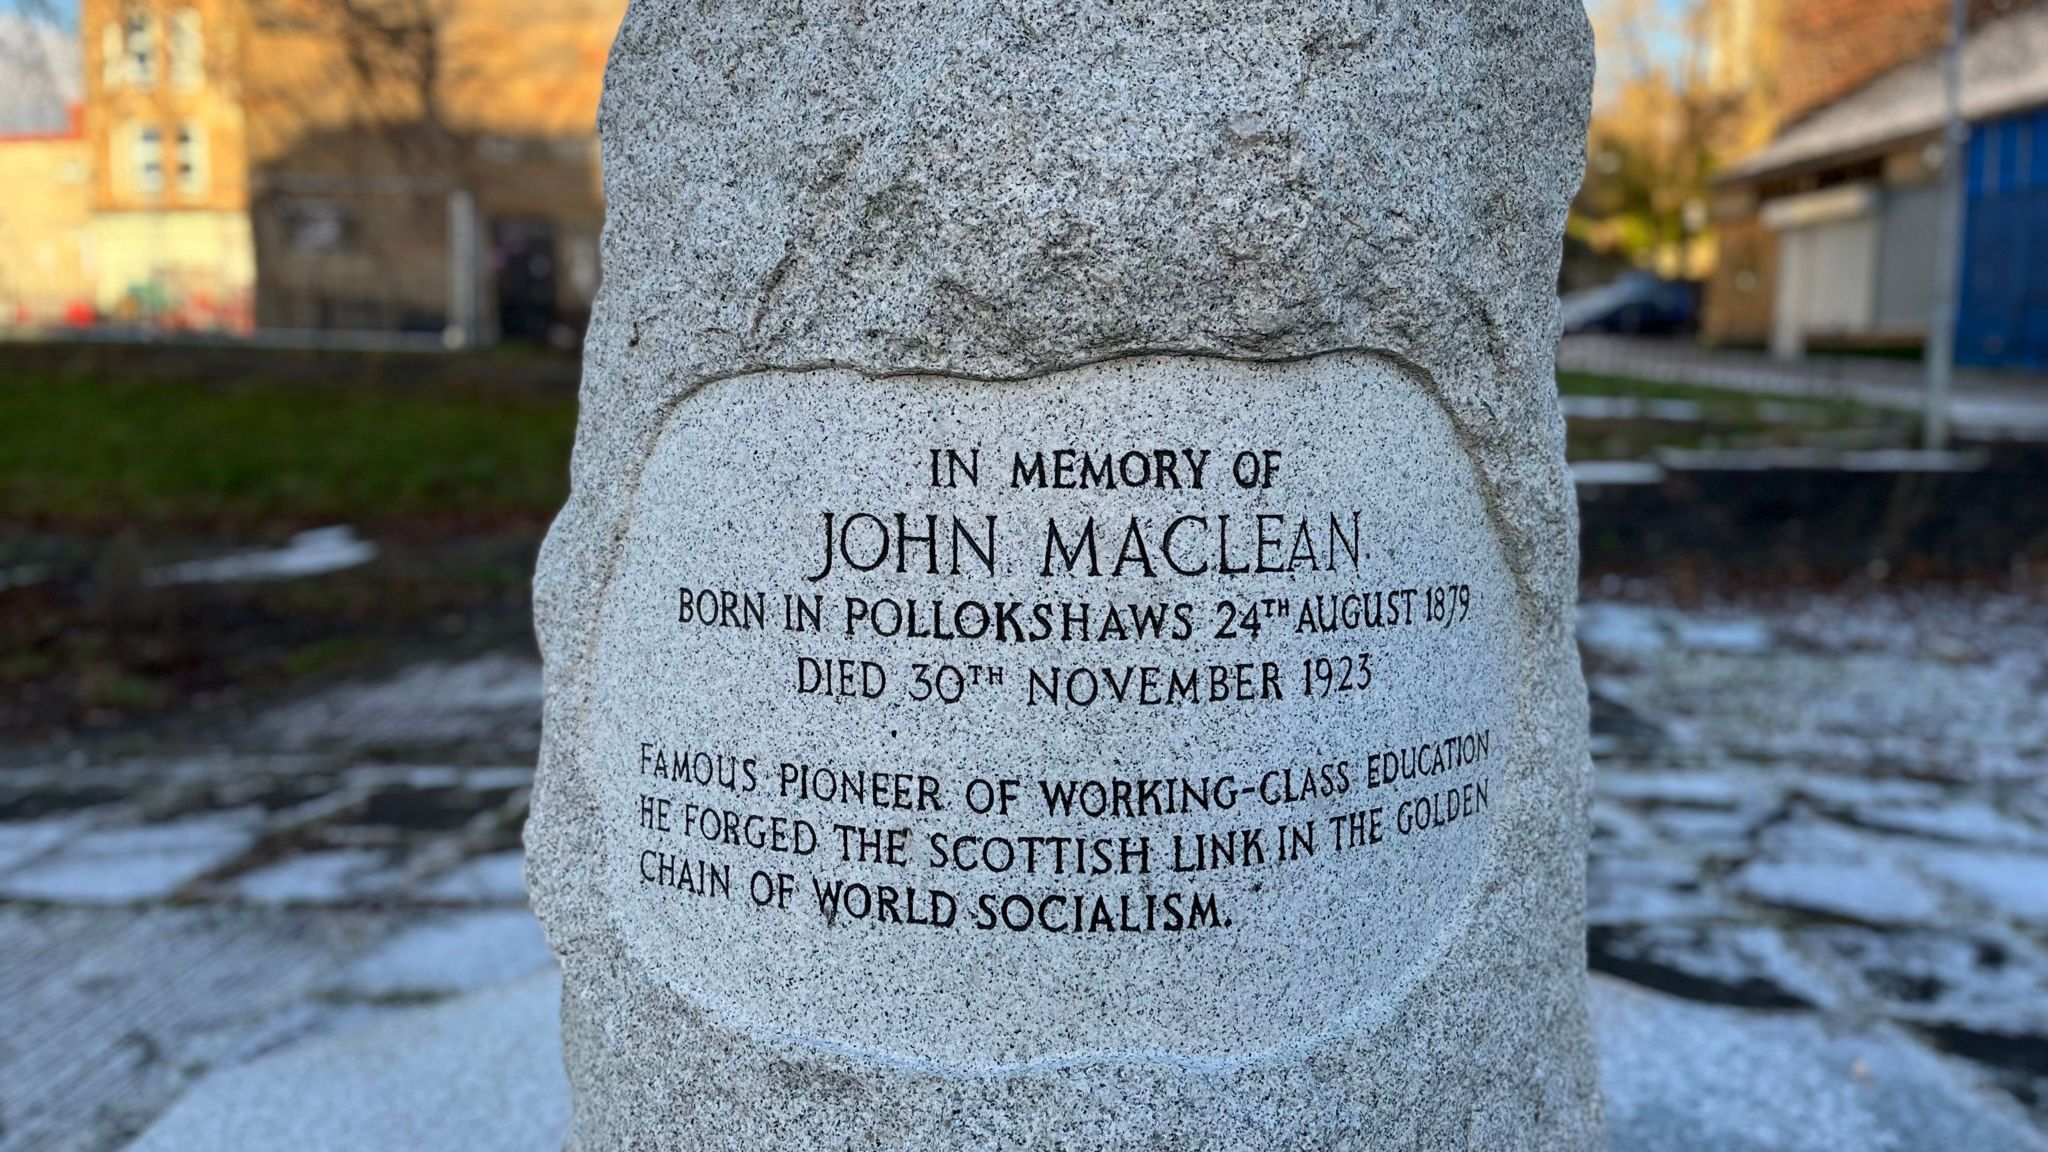 John Maclean's Memorial Cairn